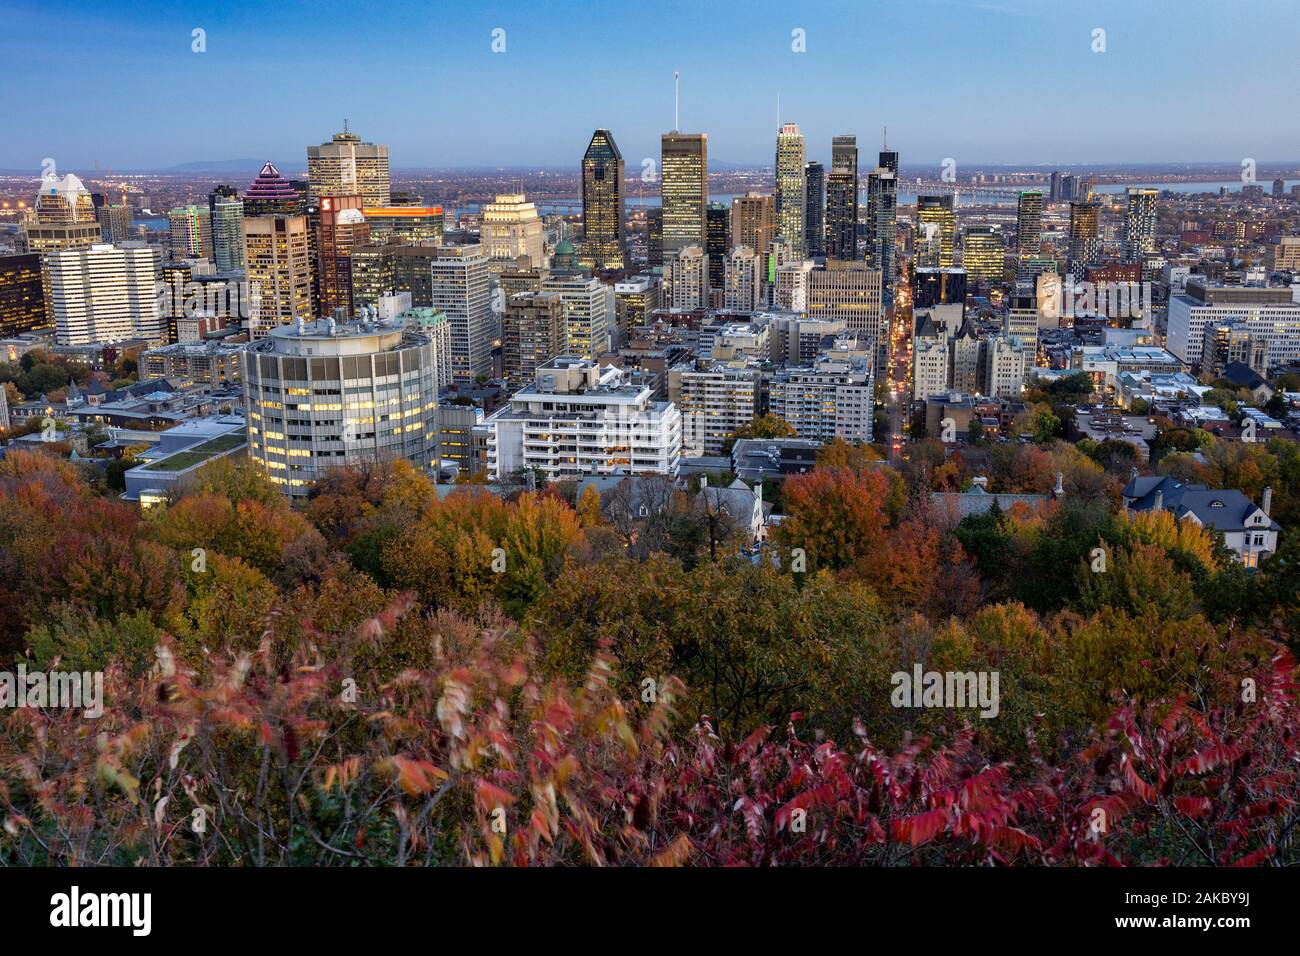 Canada, Provincia di Quebec, Montreal, Mount Royal, il centro della città e i suoi grattacieli, il murale gigante illuminato con l'effige del cantante Leonard Cohen Foto Stock